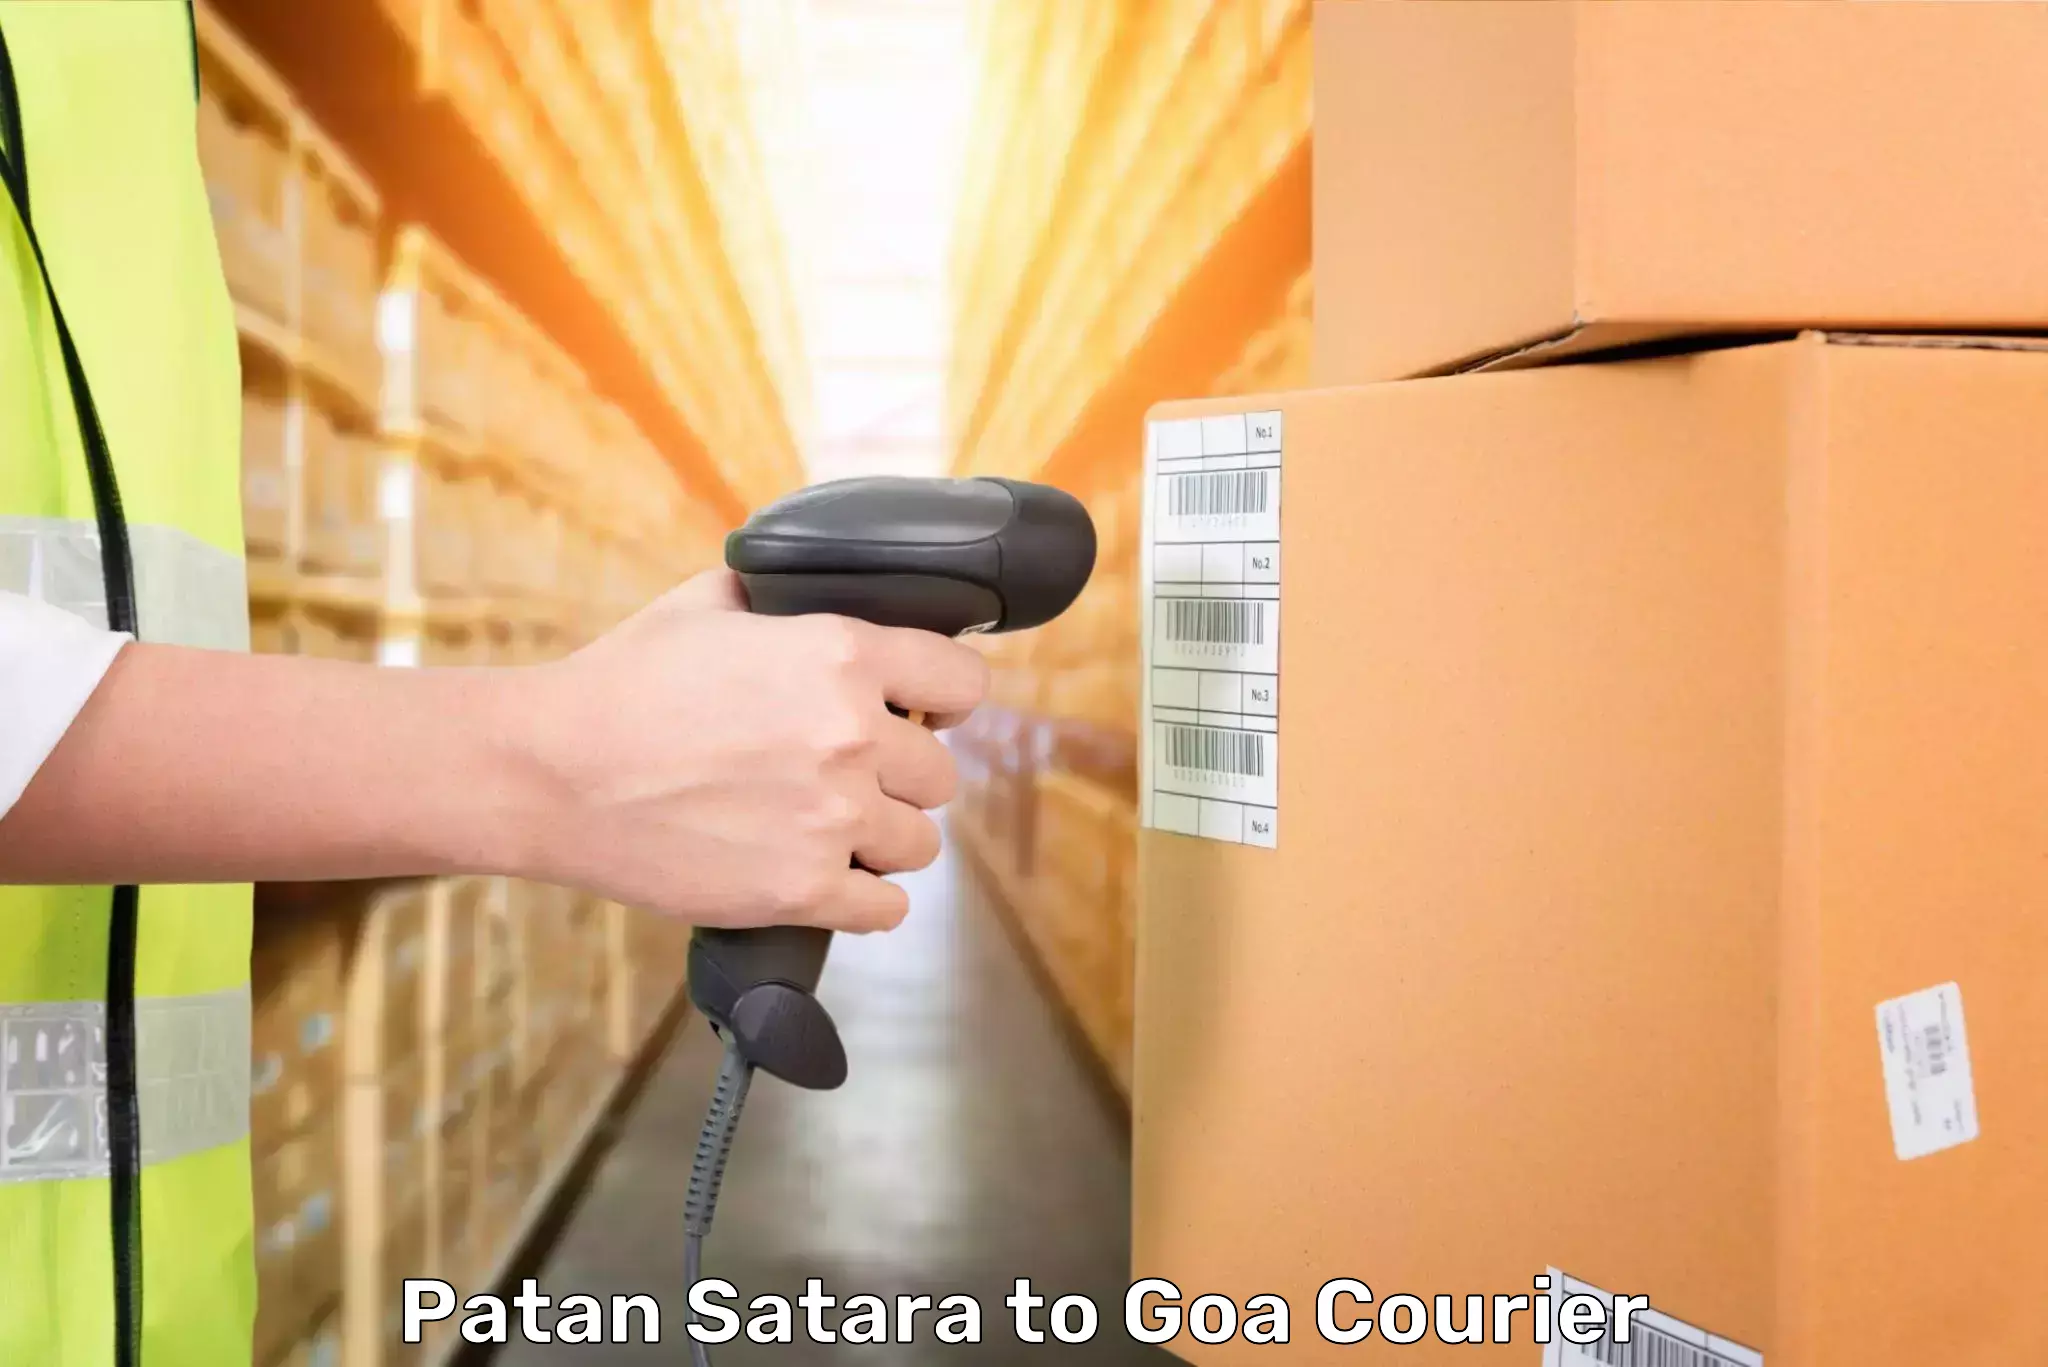 Automated luggage transport Patan Satara to Goa